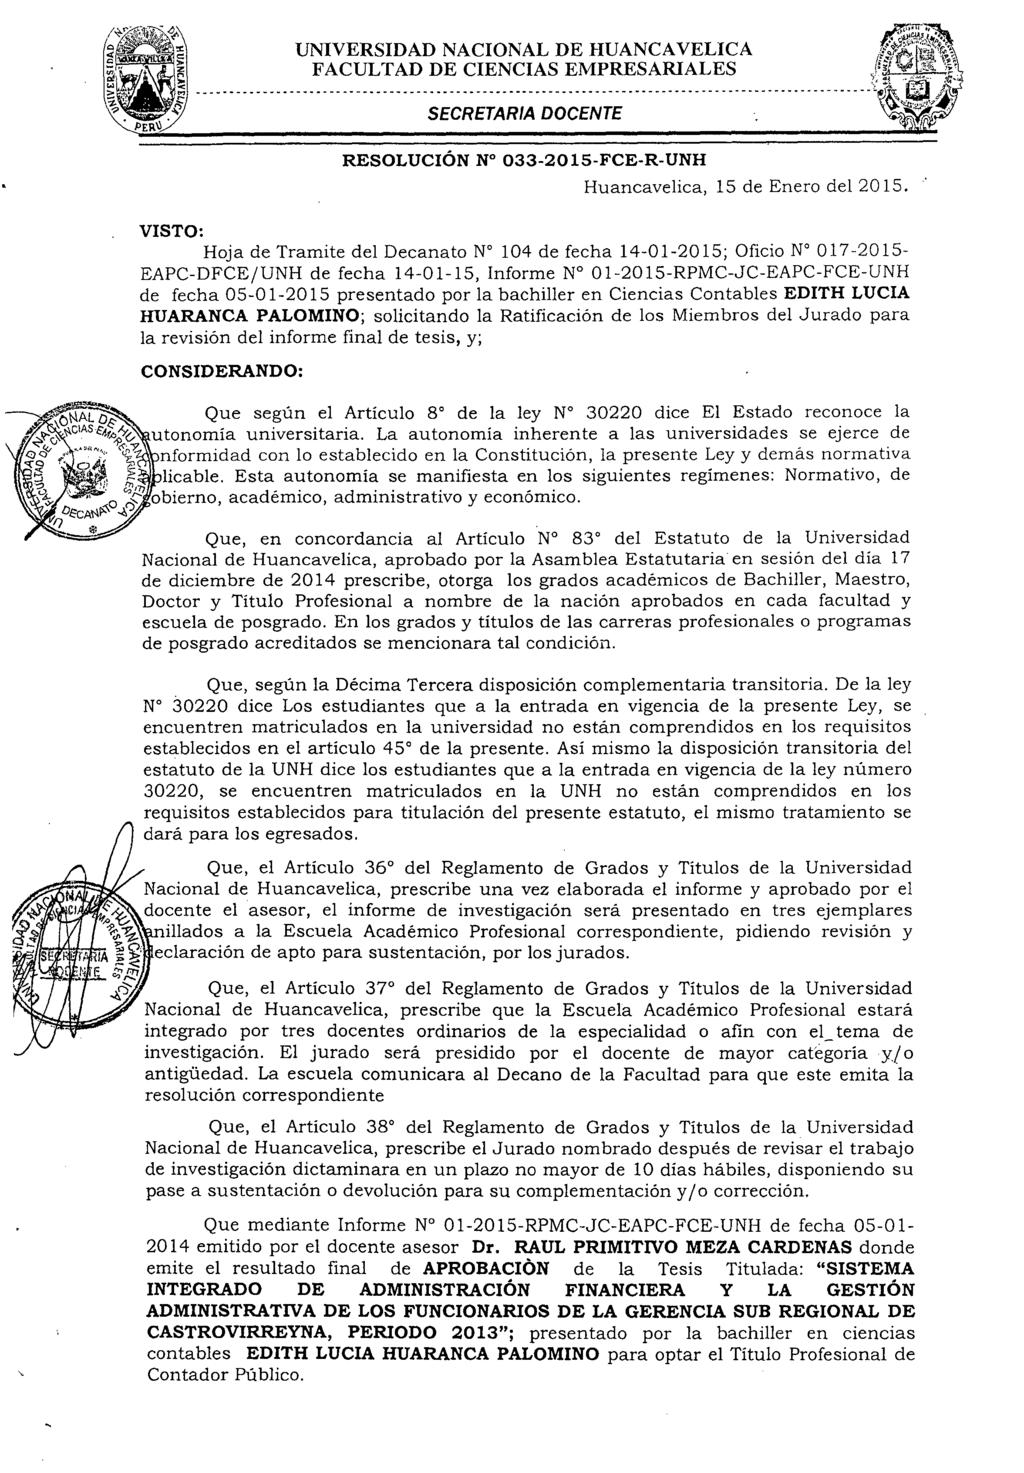 Universidad Nacional De Huancavelica Creada Por Ley N 25265